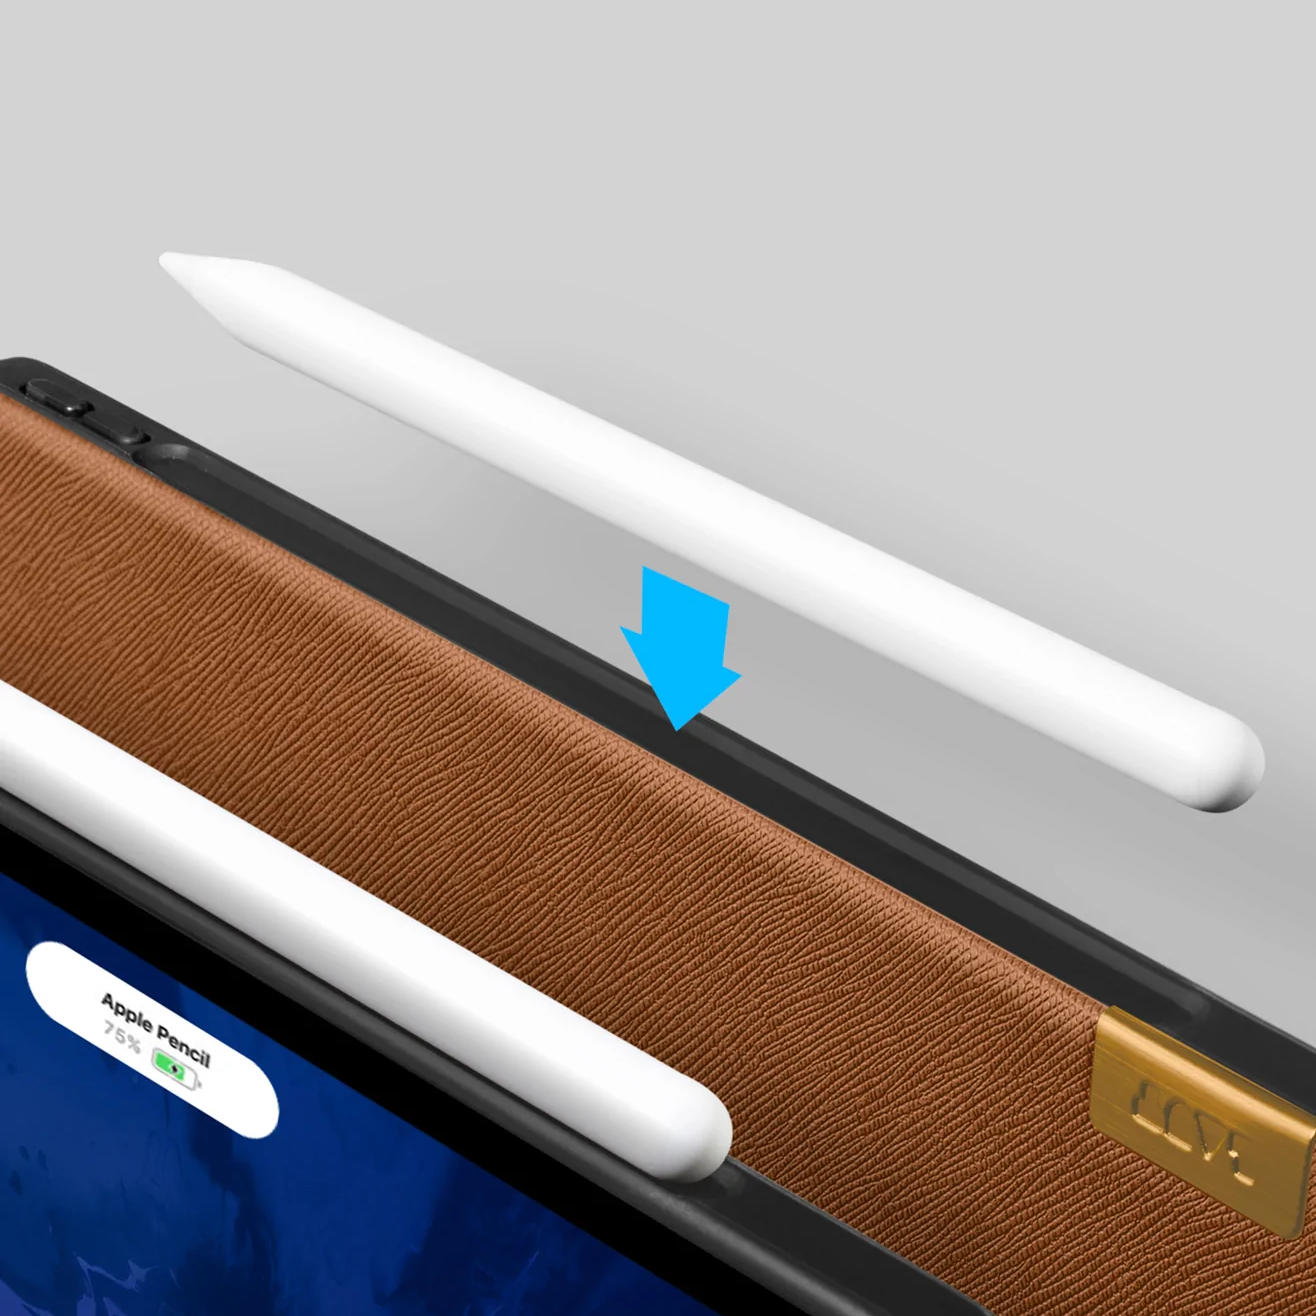 LAUT PRESTIGE Folio 軍規蜂巢 2020 iPad Pro 11吋 2代 耐衝擊保護套, 質感棕